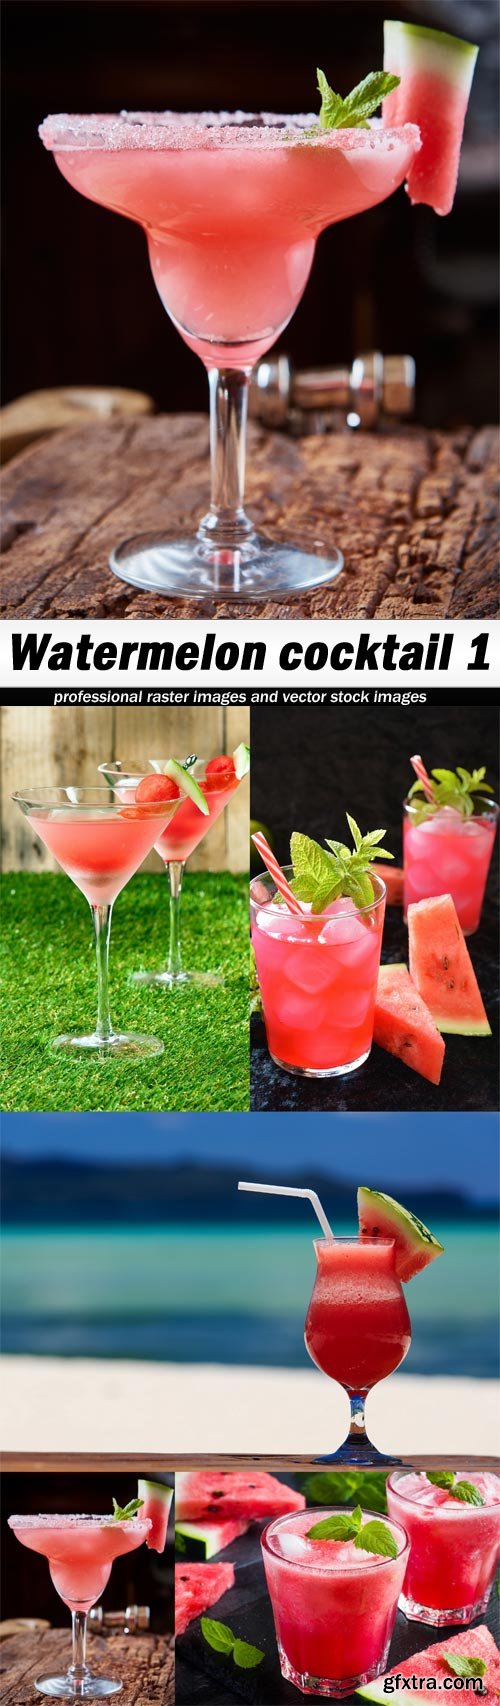 Watermelon cocktail 1-5 UHQ JPEG